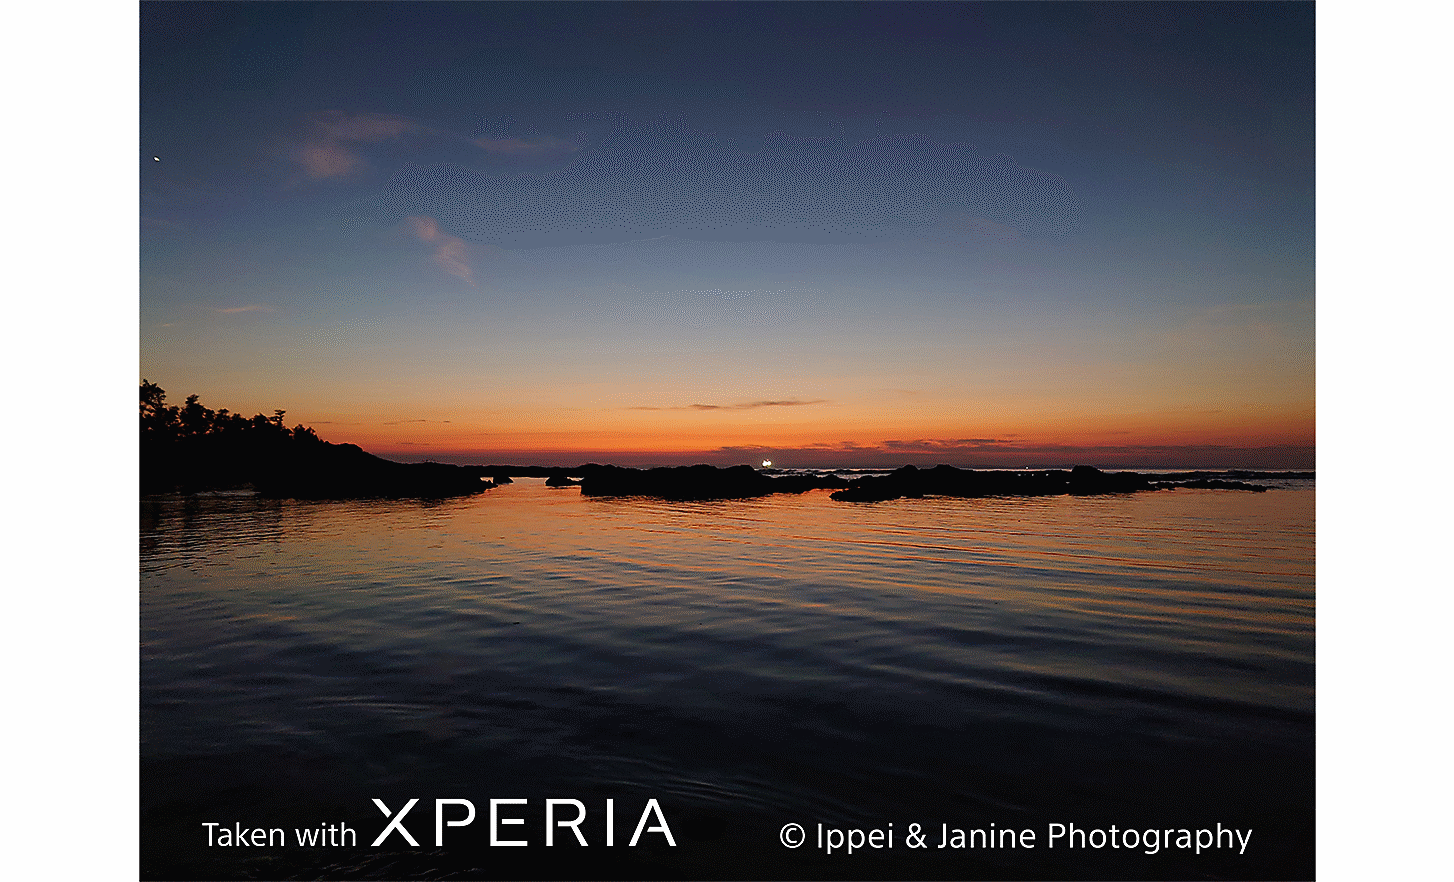 Coucher de soleil sur un grand plan d’eau. Le texte indique : « Photo prise avec un Xperia © Ippei & Janine Photography ».